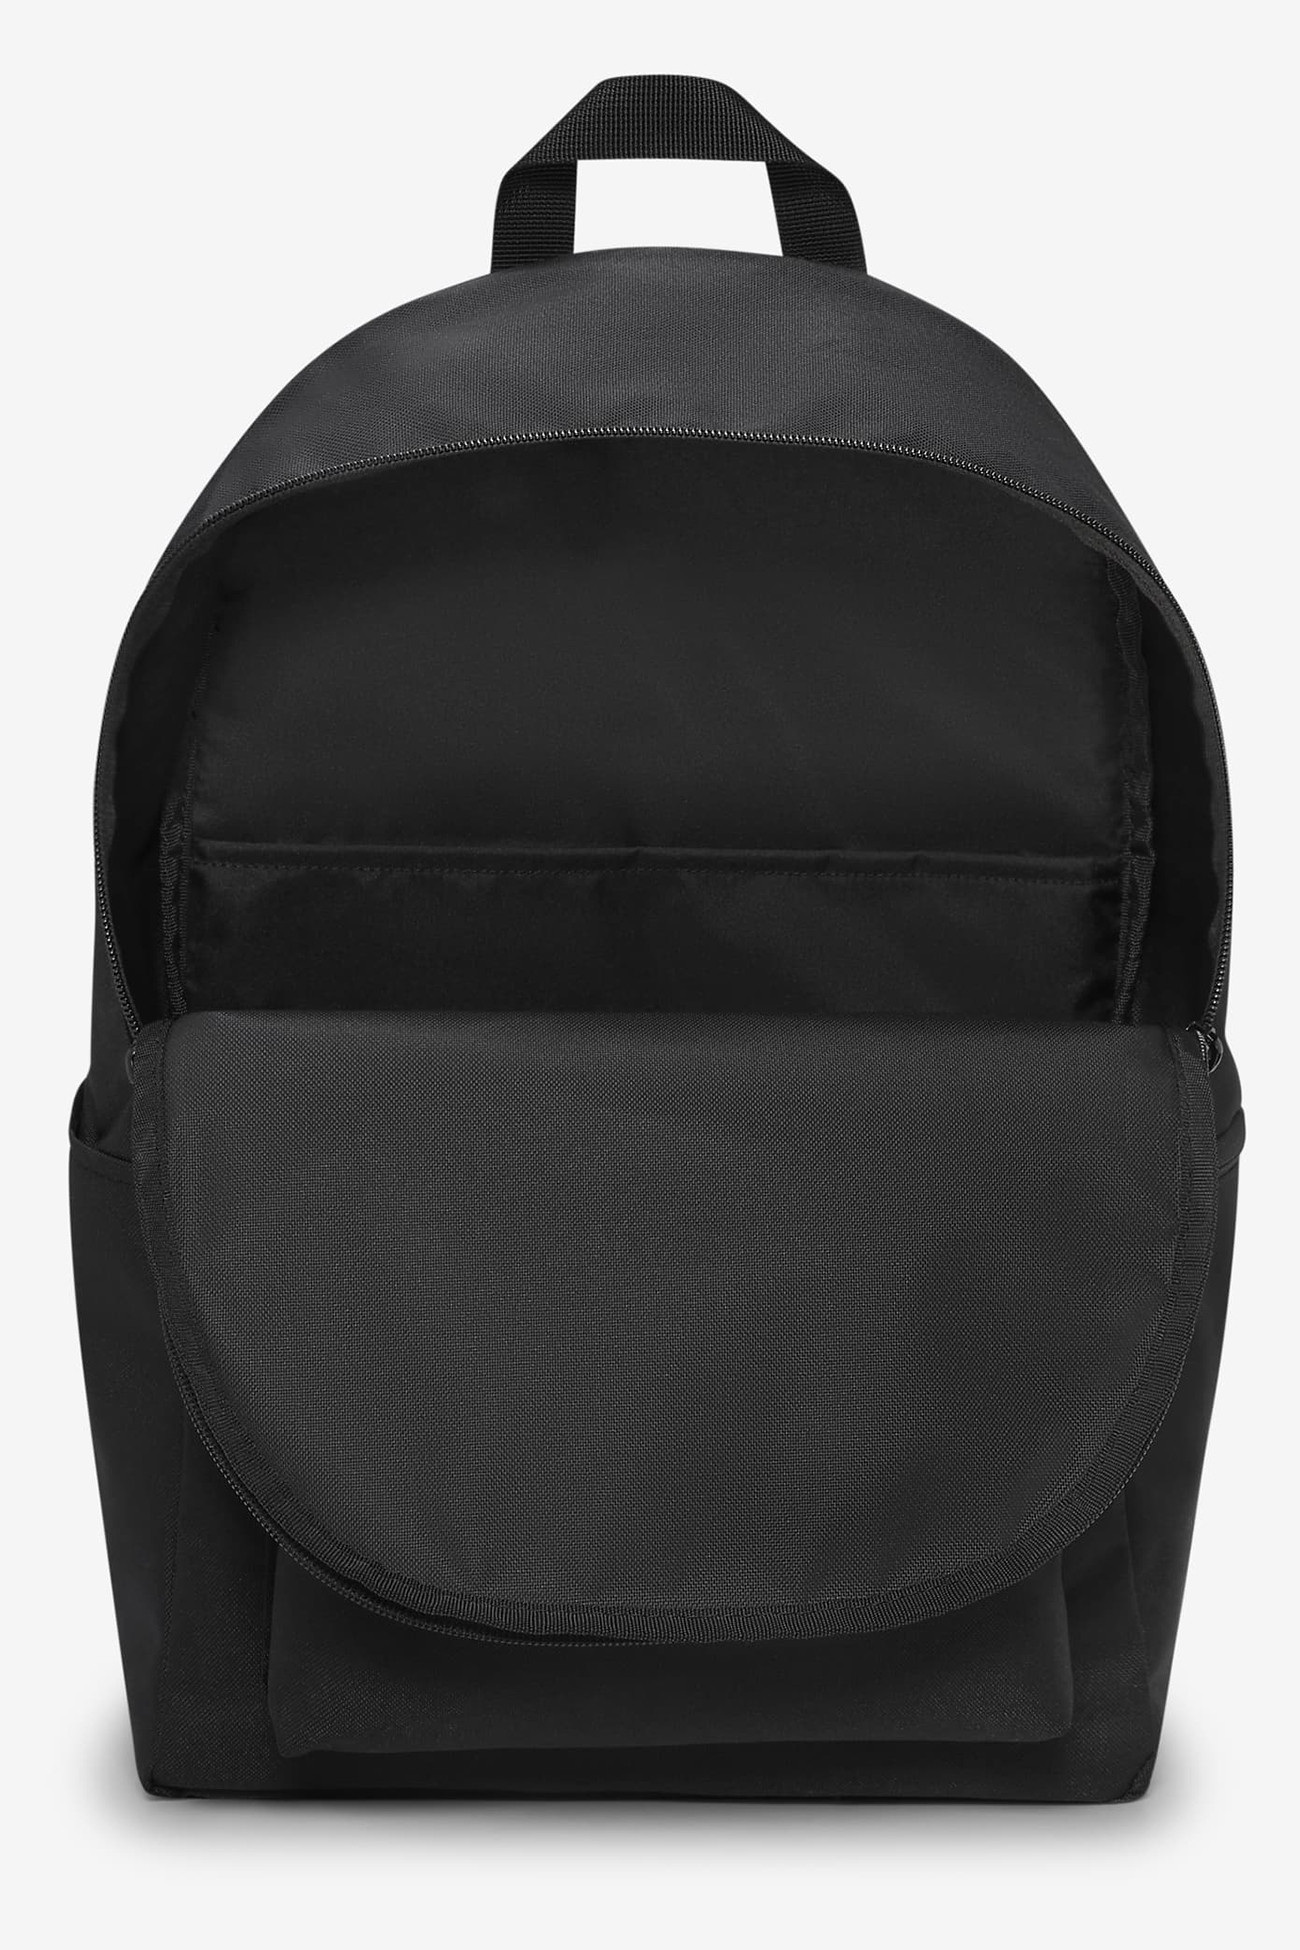 Рюкзак Nike Nk Backpack Hbr Grx чорний DQ3432-010 изображение 5